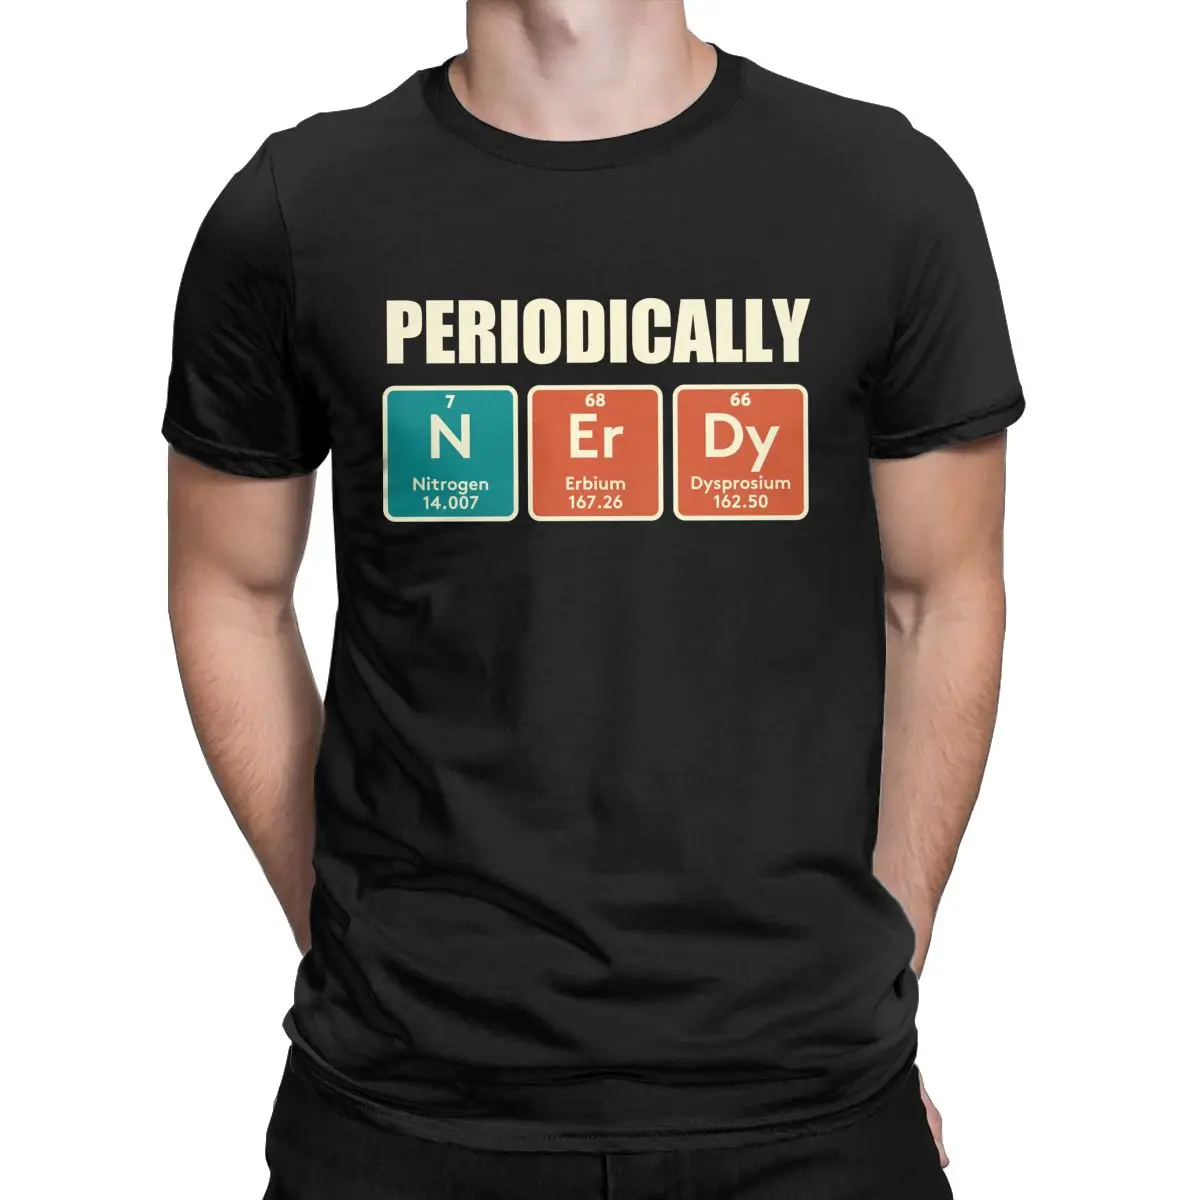 

Забавная Мужская футболка периодического стола юмора, забавная Химия и наука, забавная футболка из 100% хлопка, Креативная одежда